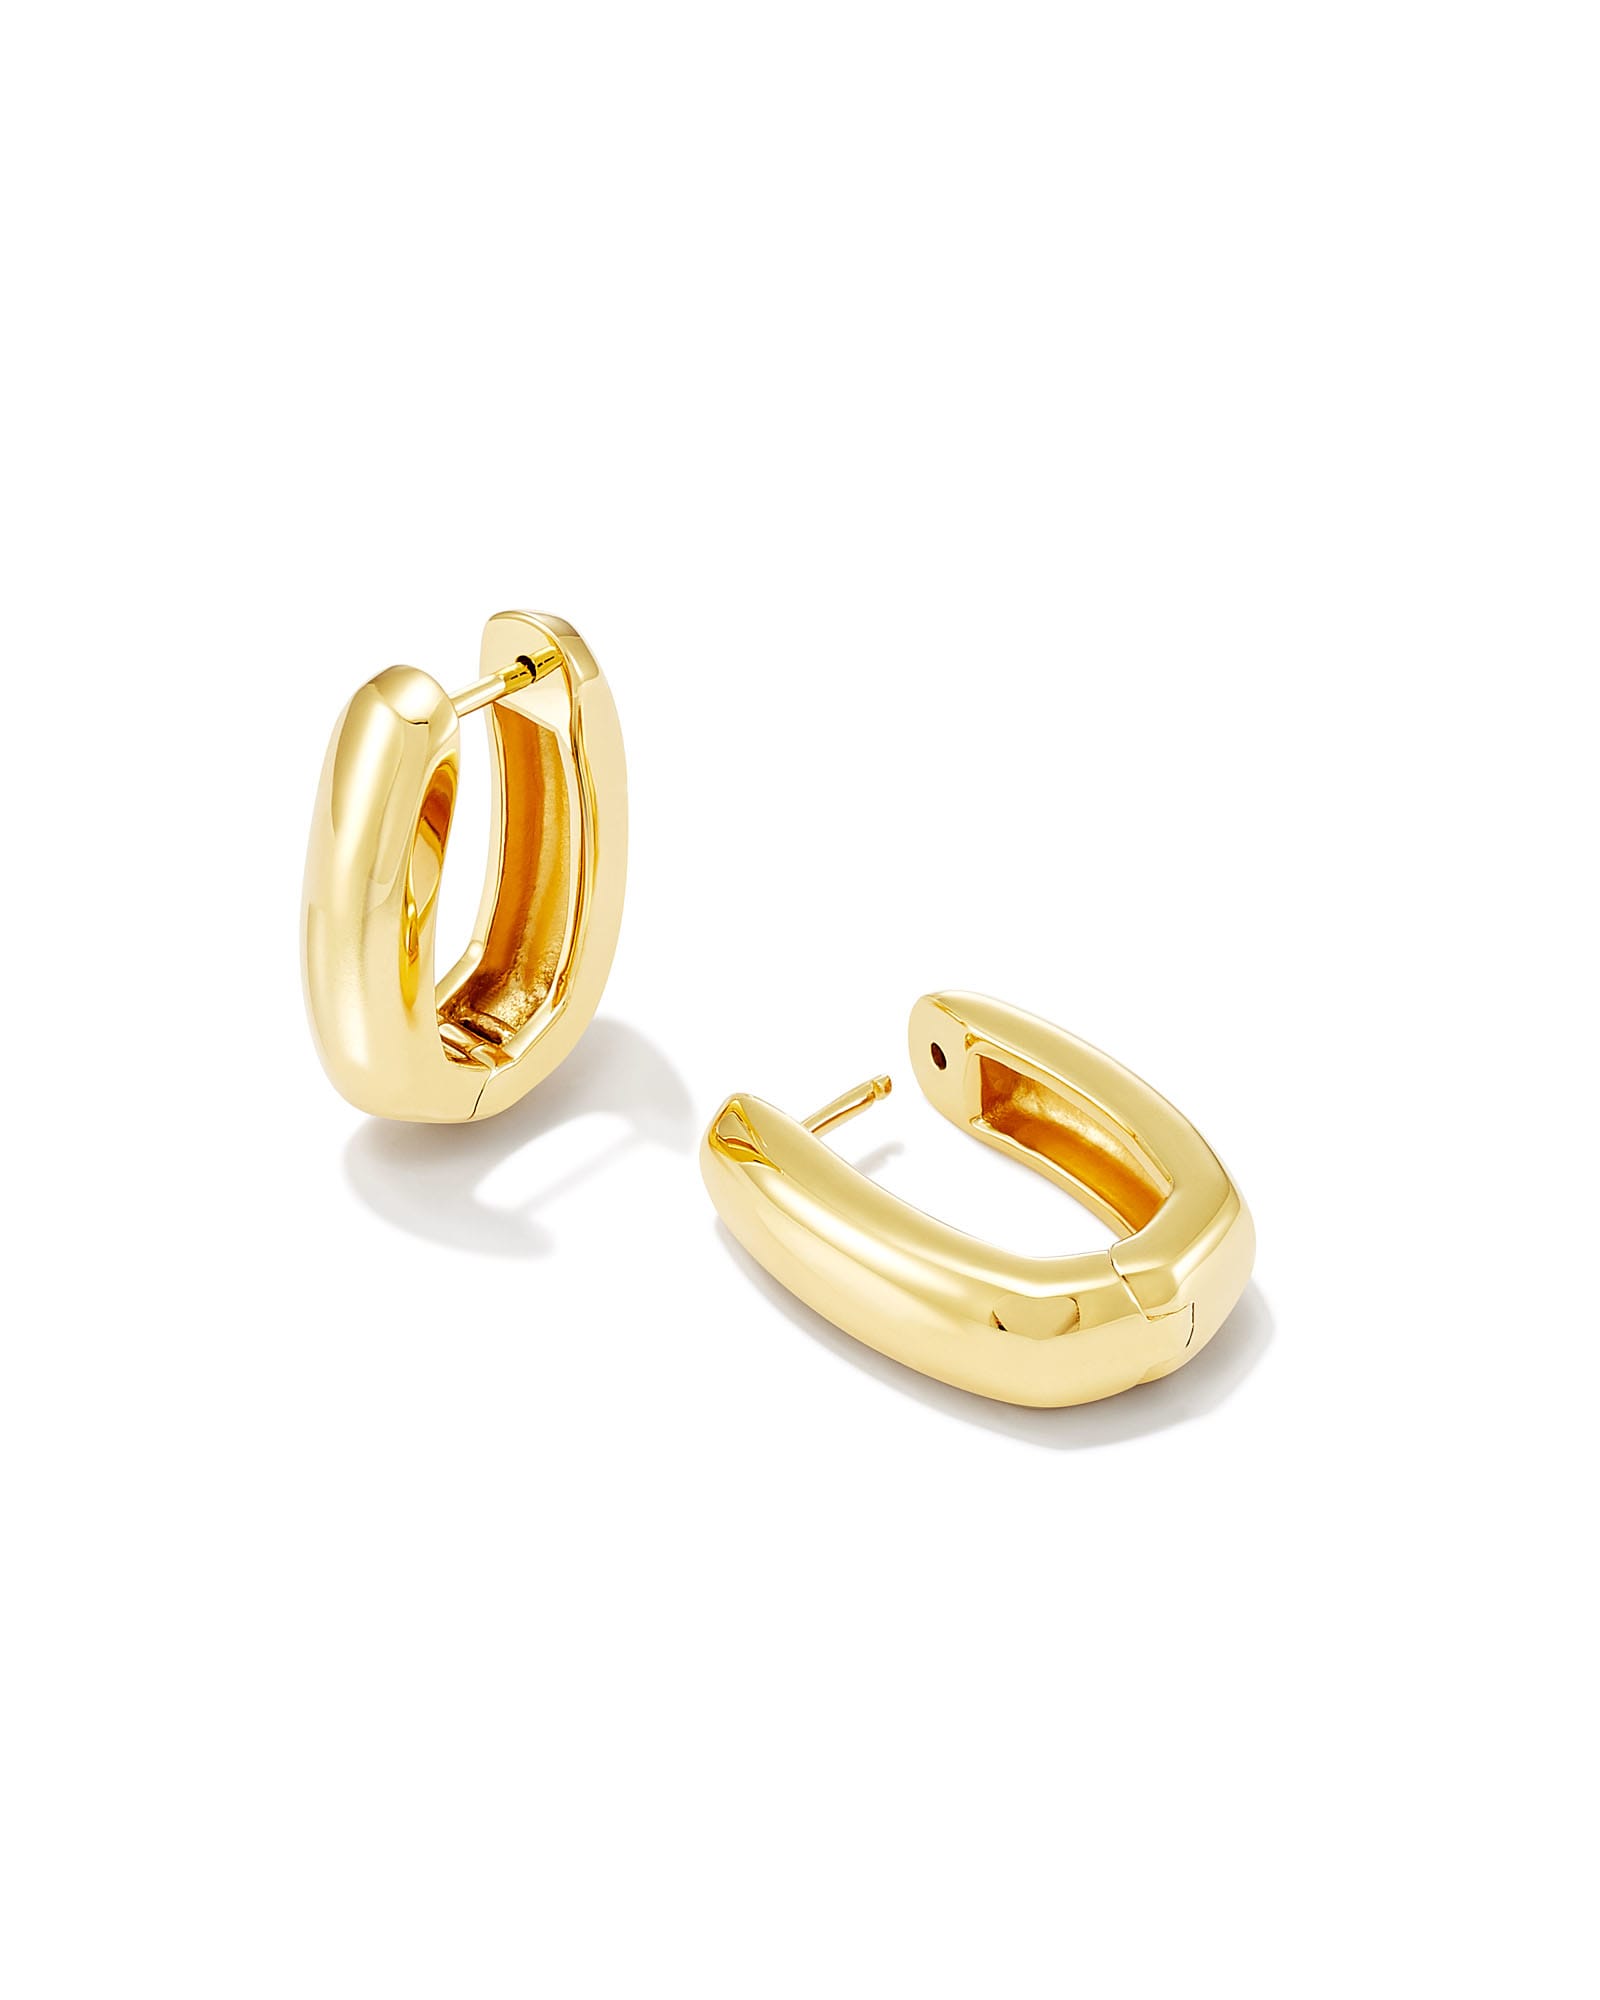 Ellen Wide Huggie Earrings in 18k Gold Vermeil | Kendra Scott